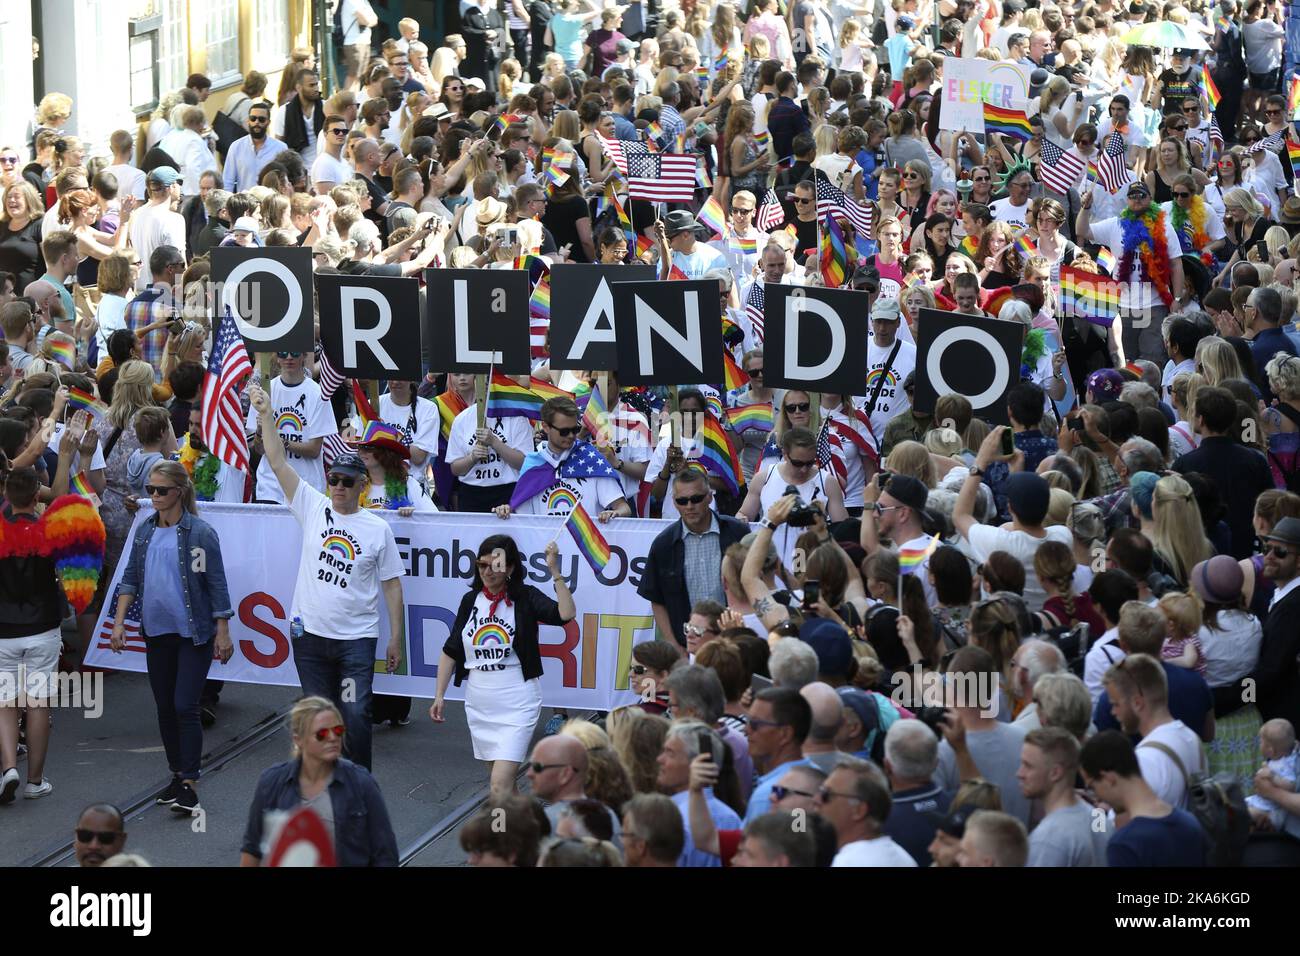 Oslo 20160625. La parade de la fierté d'Oslo a lieu en même temps que le festival de la fierté d'Oslo. L'incident d'Orlando, où 49 personnes ont été tuées et plus de 50 autres blessées lors d'une attaque au club gay Pulse 12 juin, a été un thème répété pendant la parade. Photo: Vidar Ruud / NTB scanpix Banque D'Images